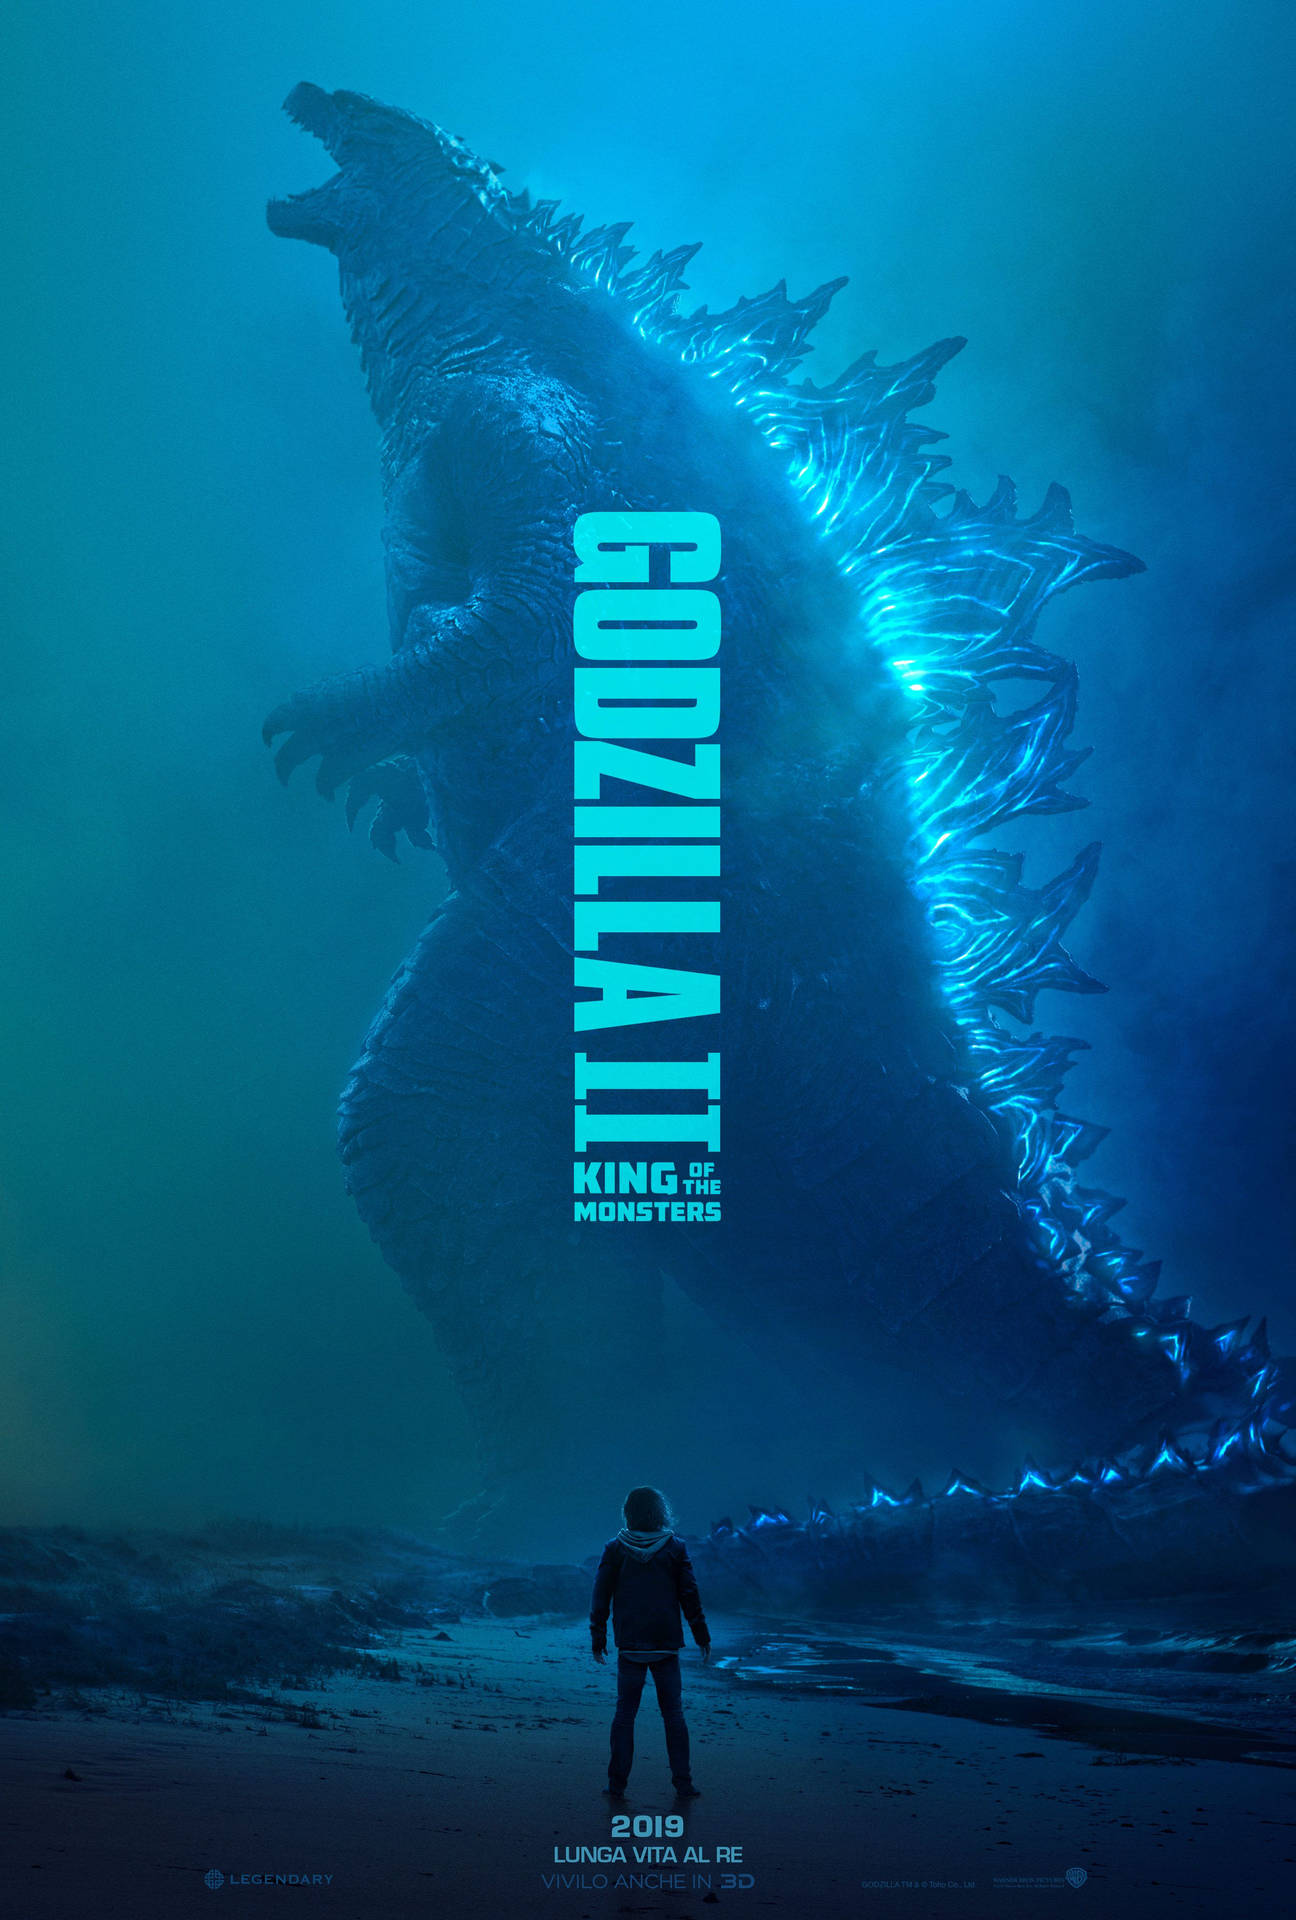 Godzilla 2764X4096 Wallpaper and Background Image